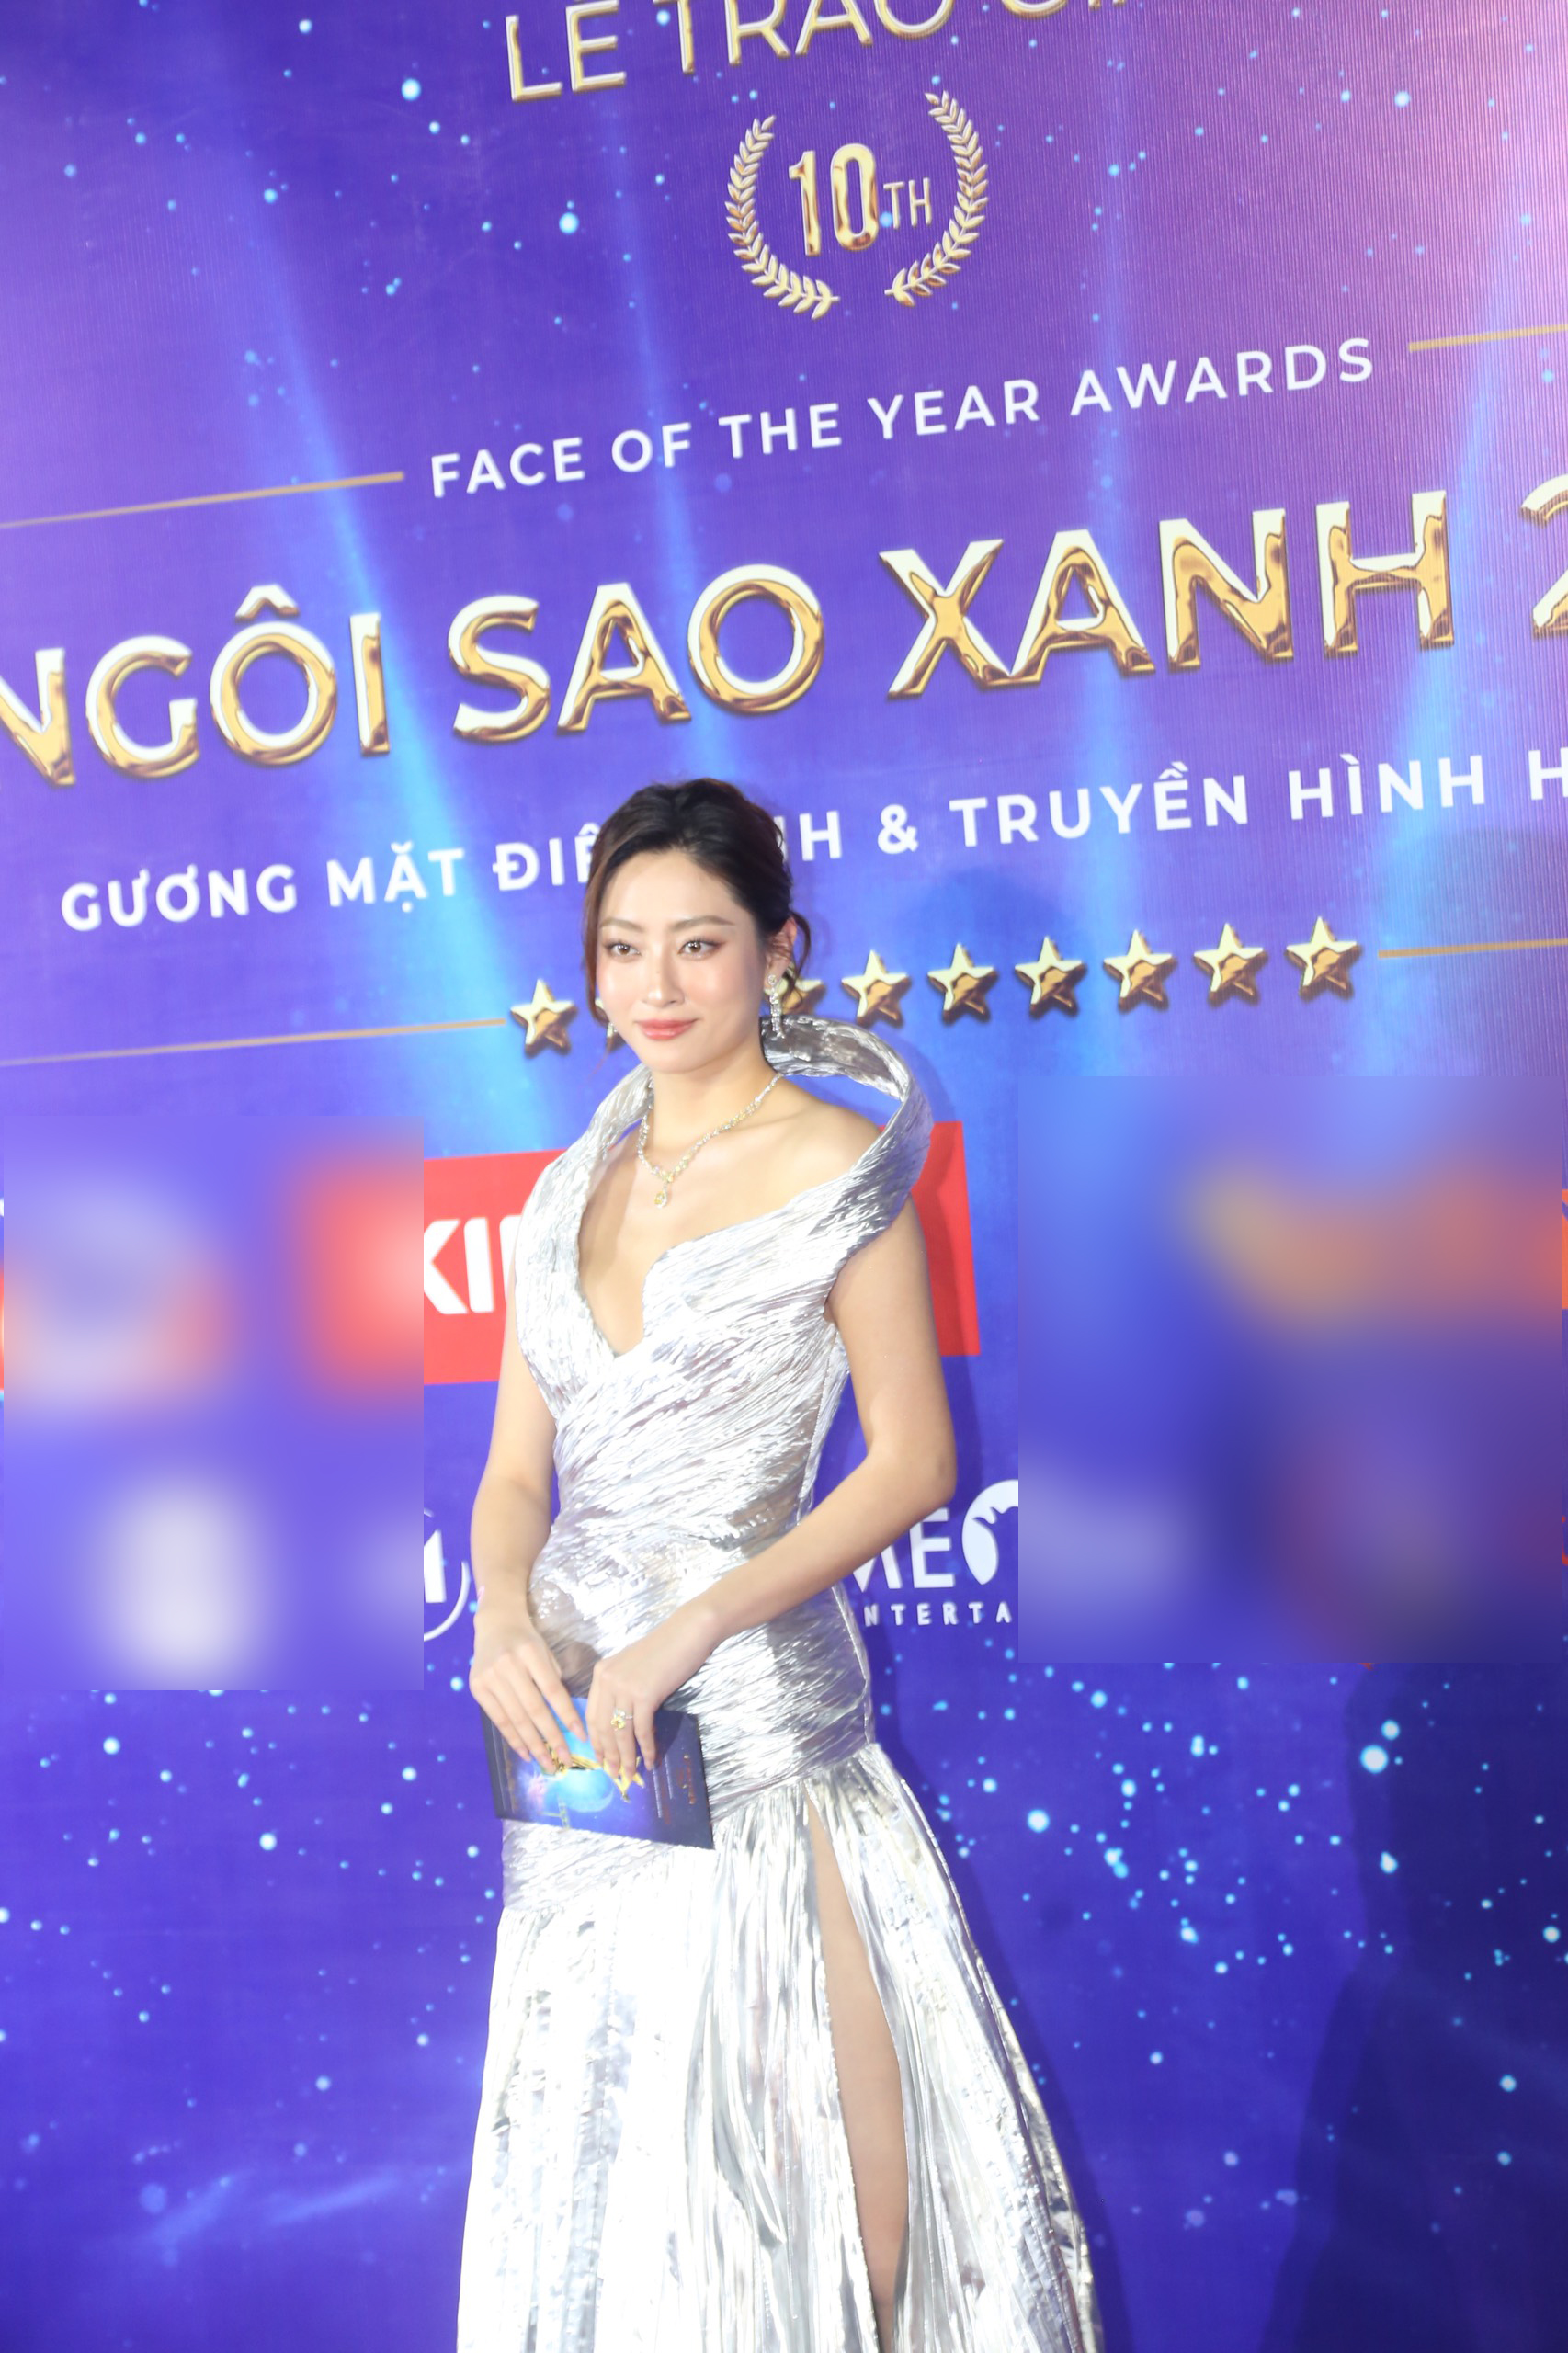 DJ Mie khoe nhan sắc như Hoa hậu, vợ một nam ca sĩ nổi tiếng lộ gương mặt khác lạ trên thảm đỏ - ảnh 4